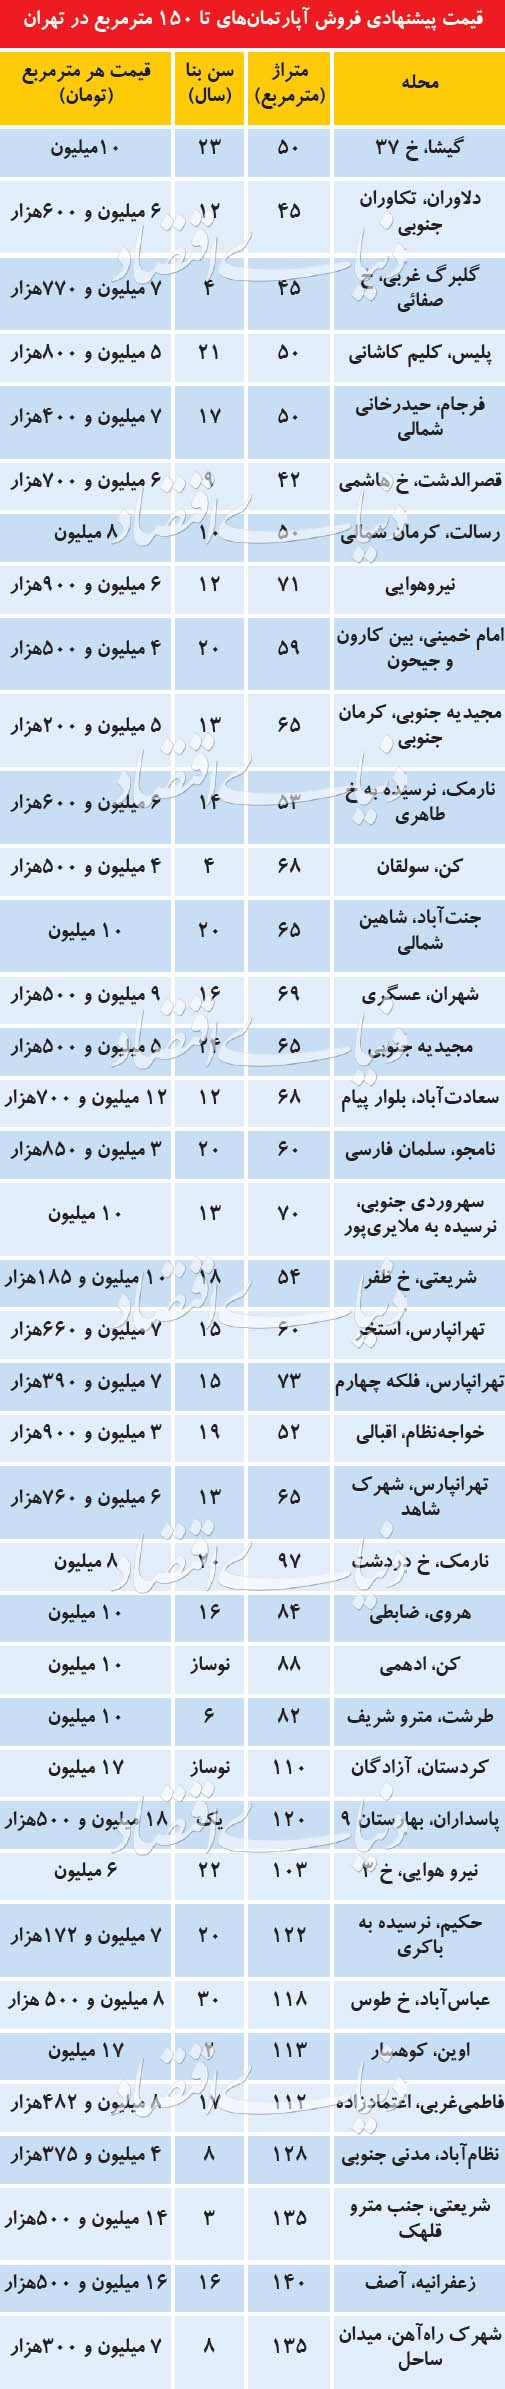 قیمت آپارتمانهای کمتر از 150 متر در نقاط مختلف تهران